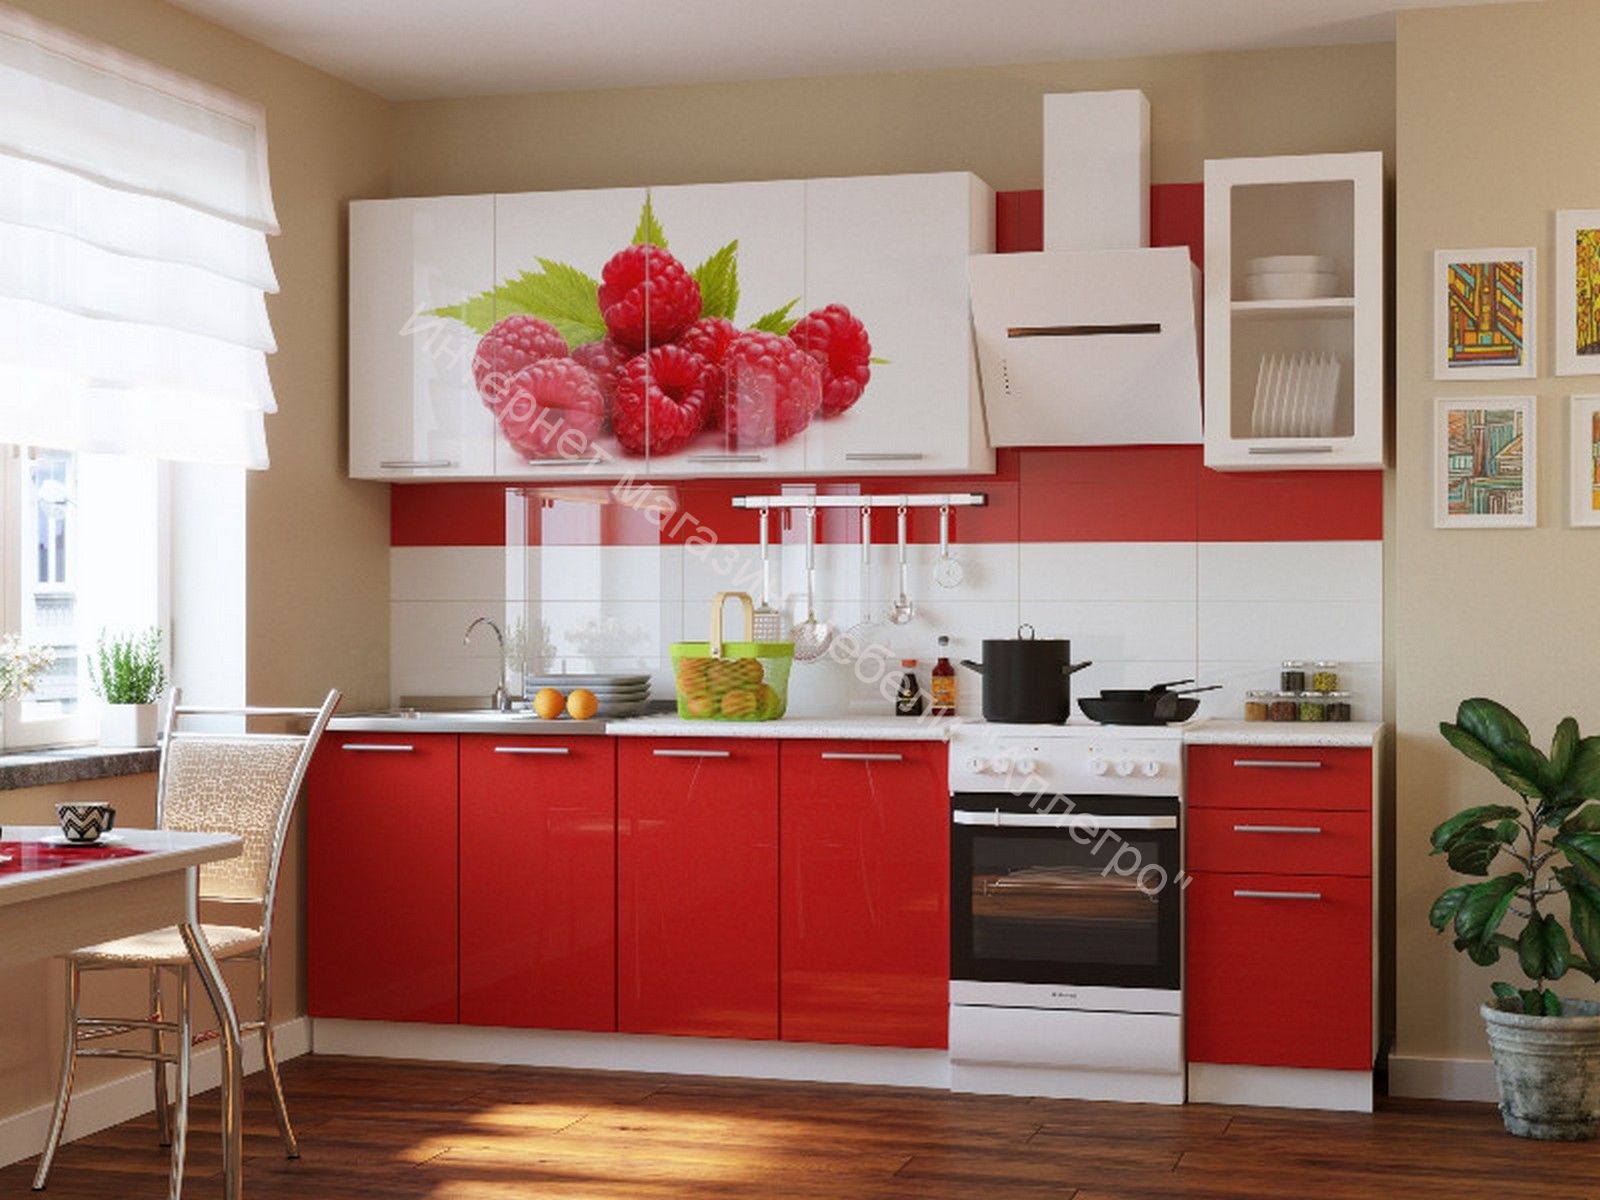 Кухни владивосток каталог. Кухня "красные маки" 1,6м. Кухня в Красном цвете. Кухонный гарнитур красного цвета.